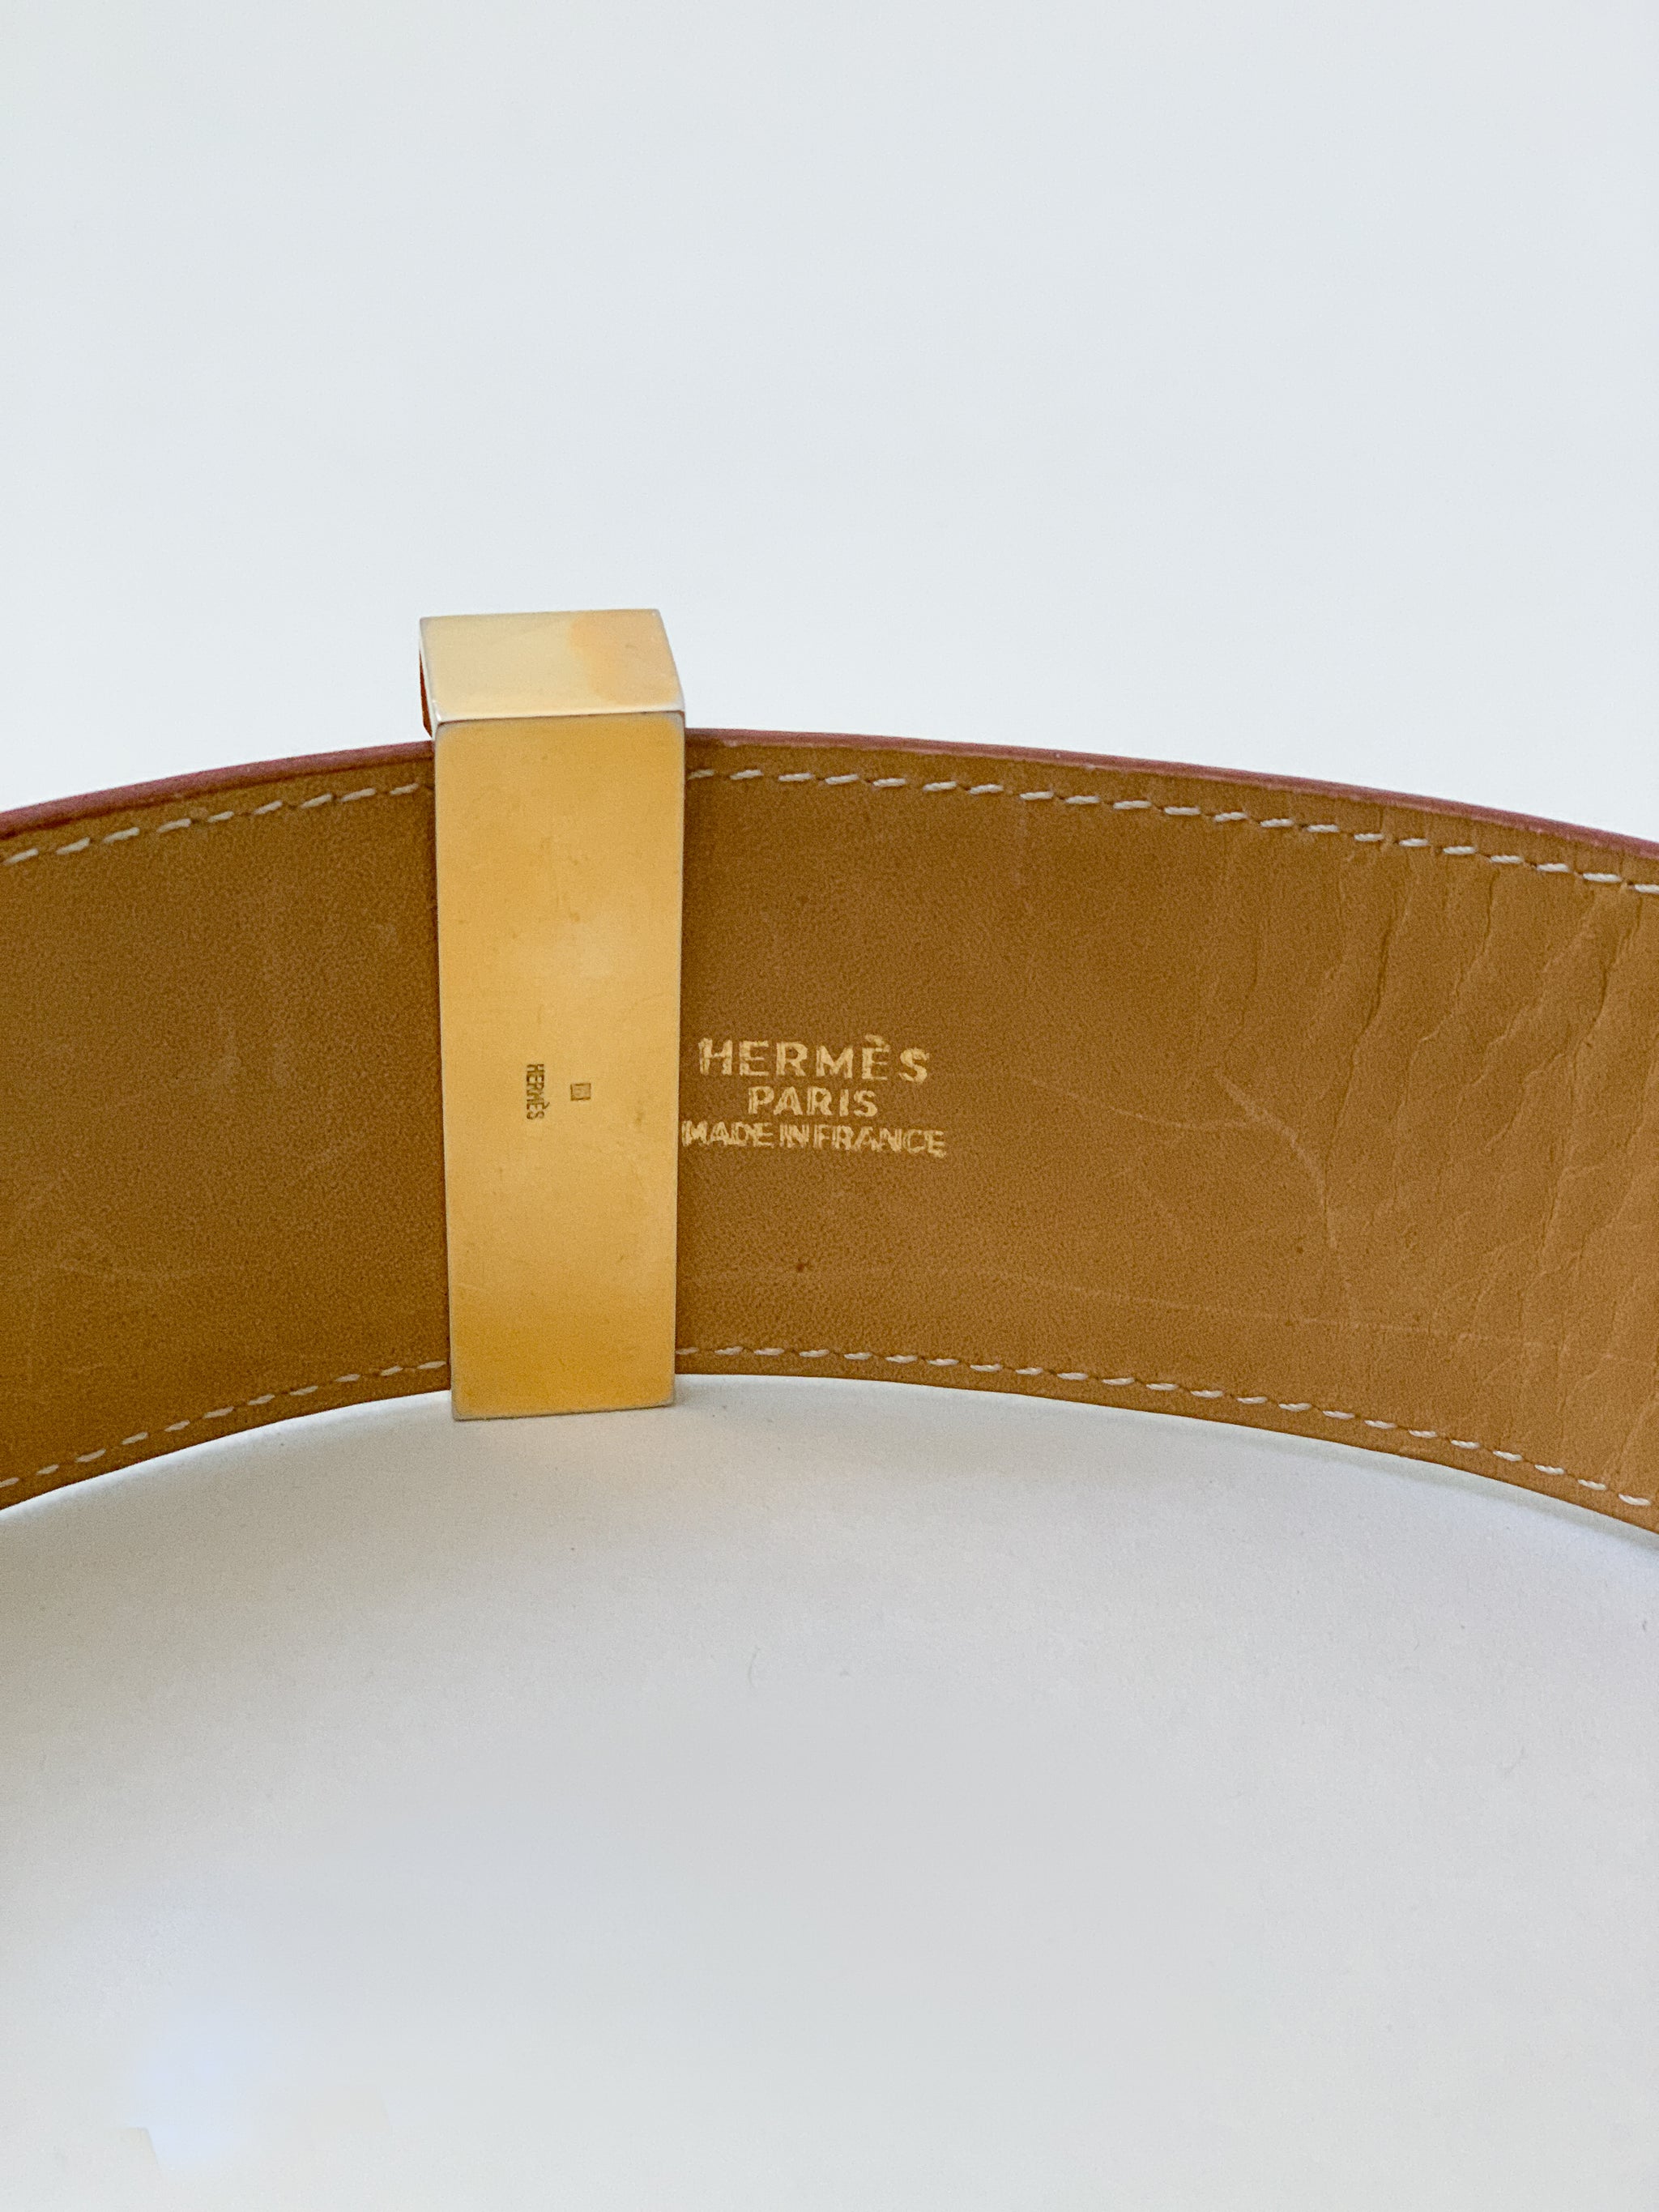 Collier de chien leather belt Hermès Black size 80 cm in Leather